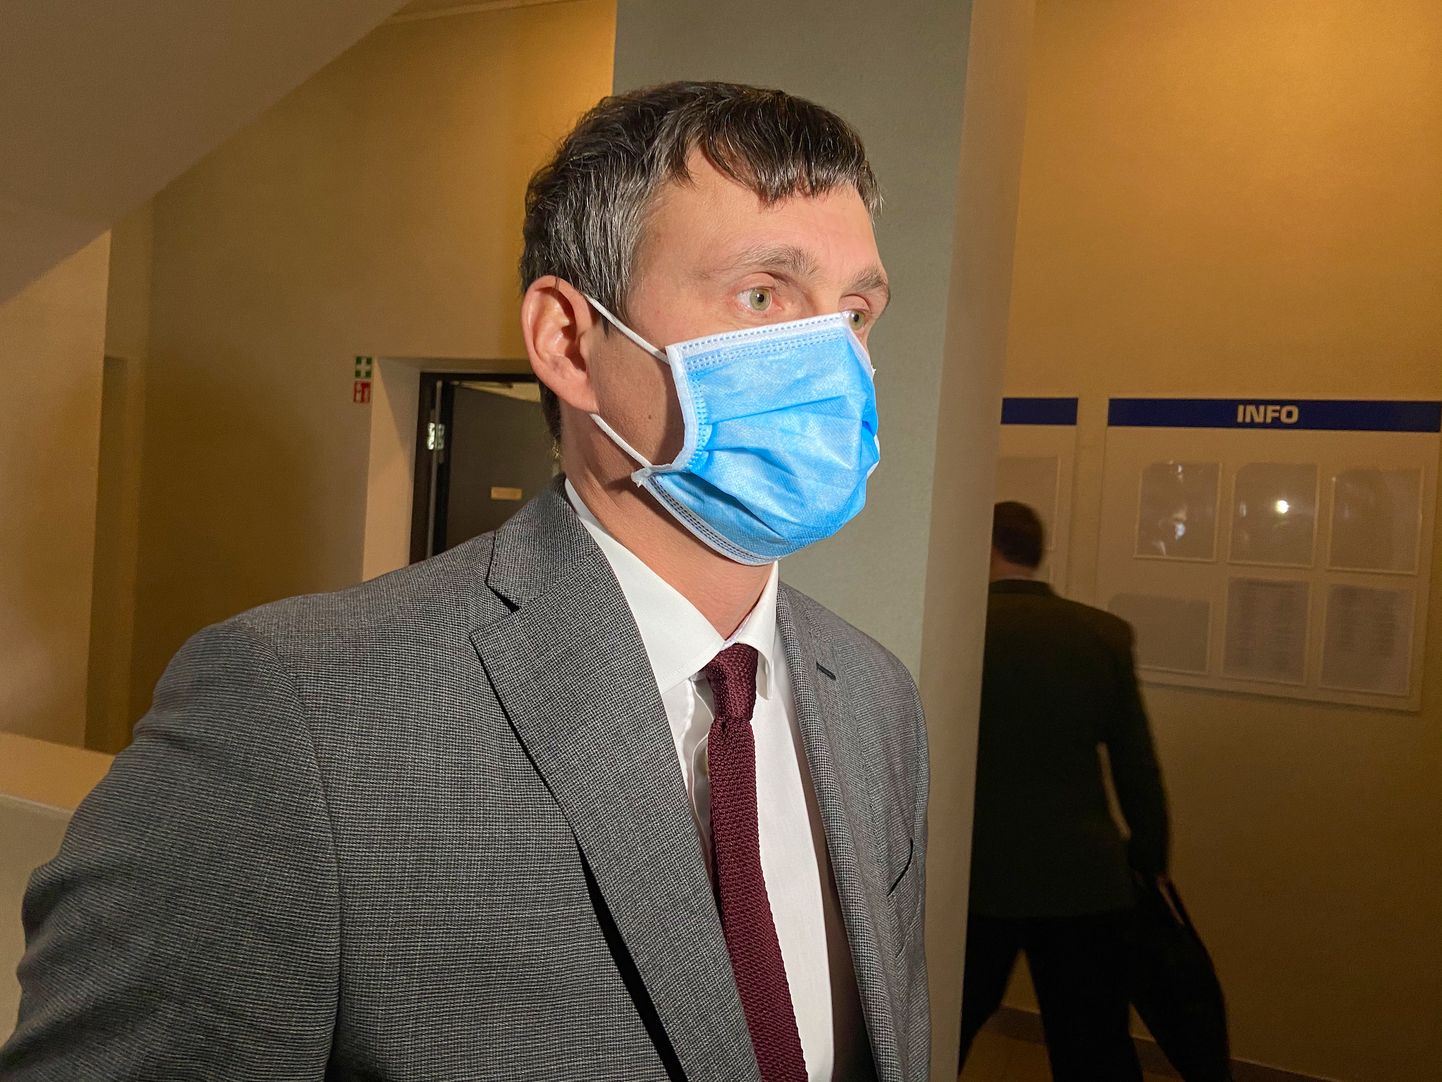 "Крепкого хозяйственника" и "народного мэра" Алексея Евграфова назначили руководить Нарвской больницей.